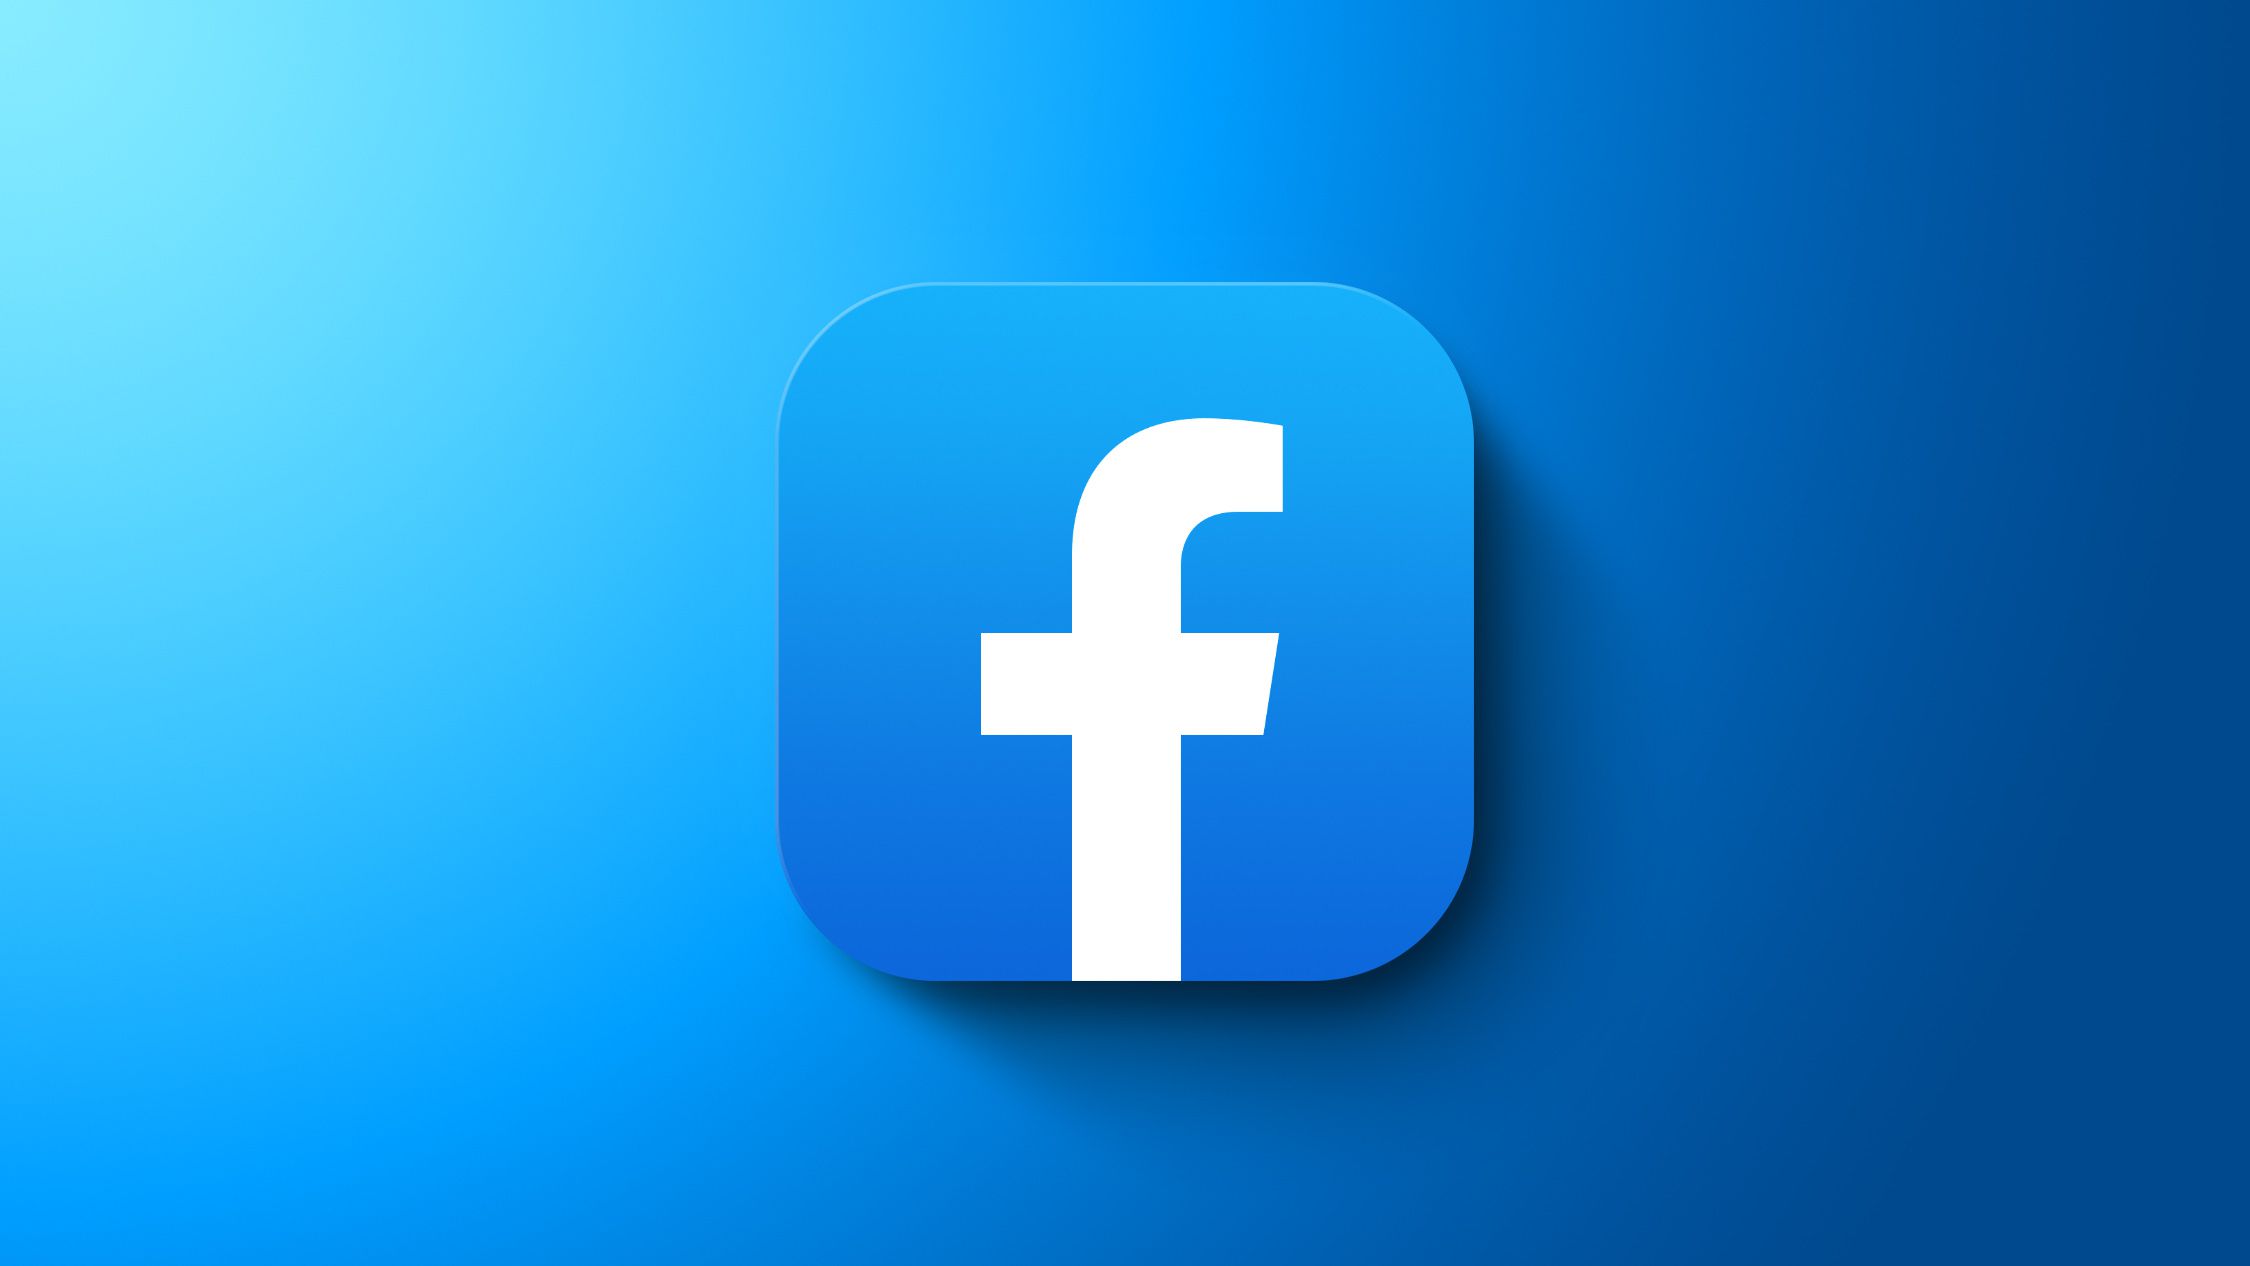 Facebook Reports Record Ad Revenue for Q2 2021, Despite Apple's iOS Privacy Chan..